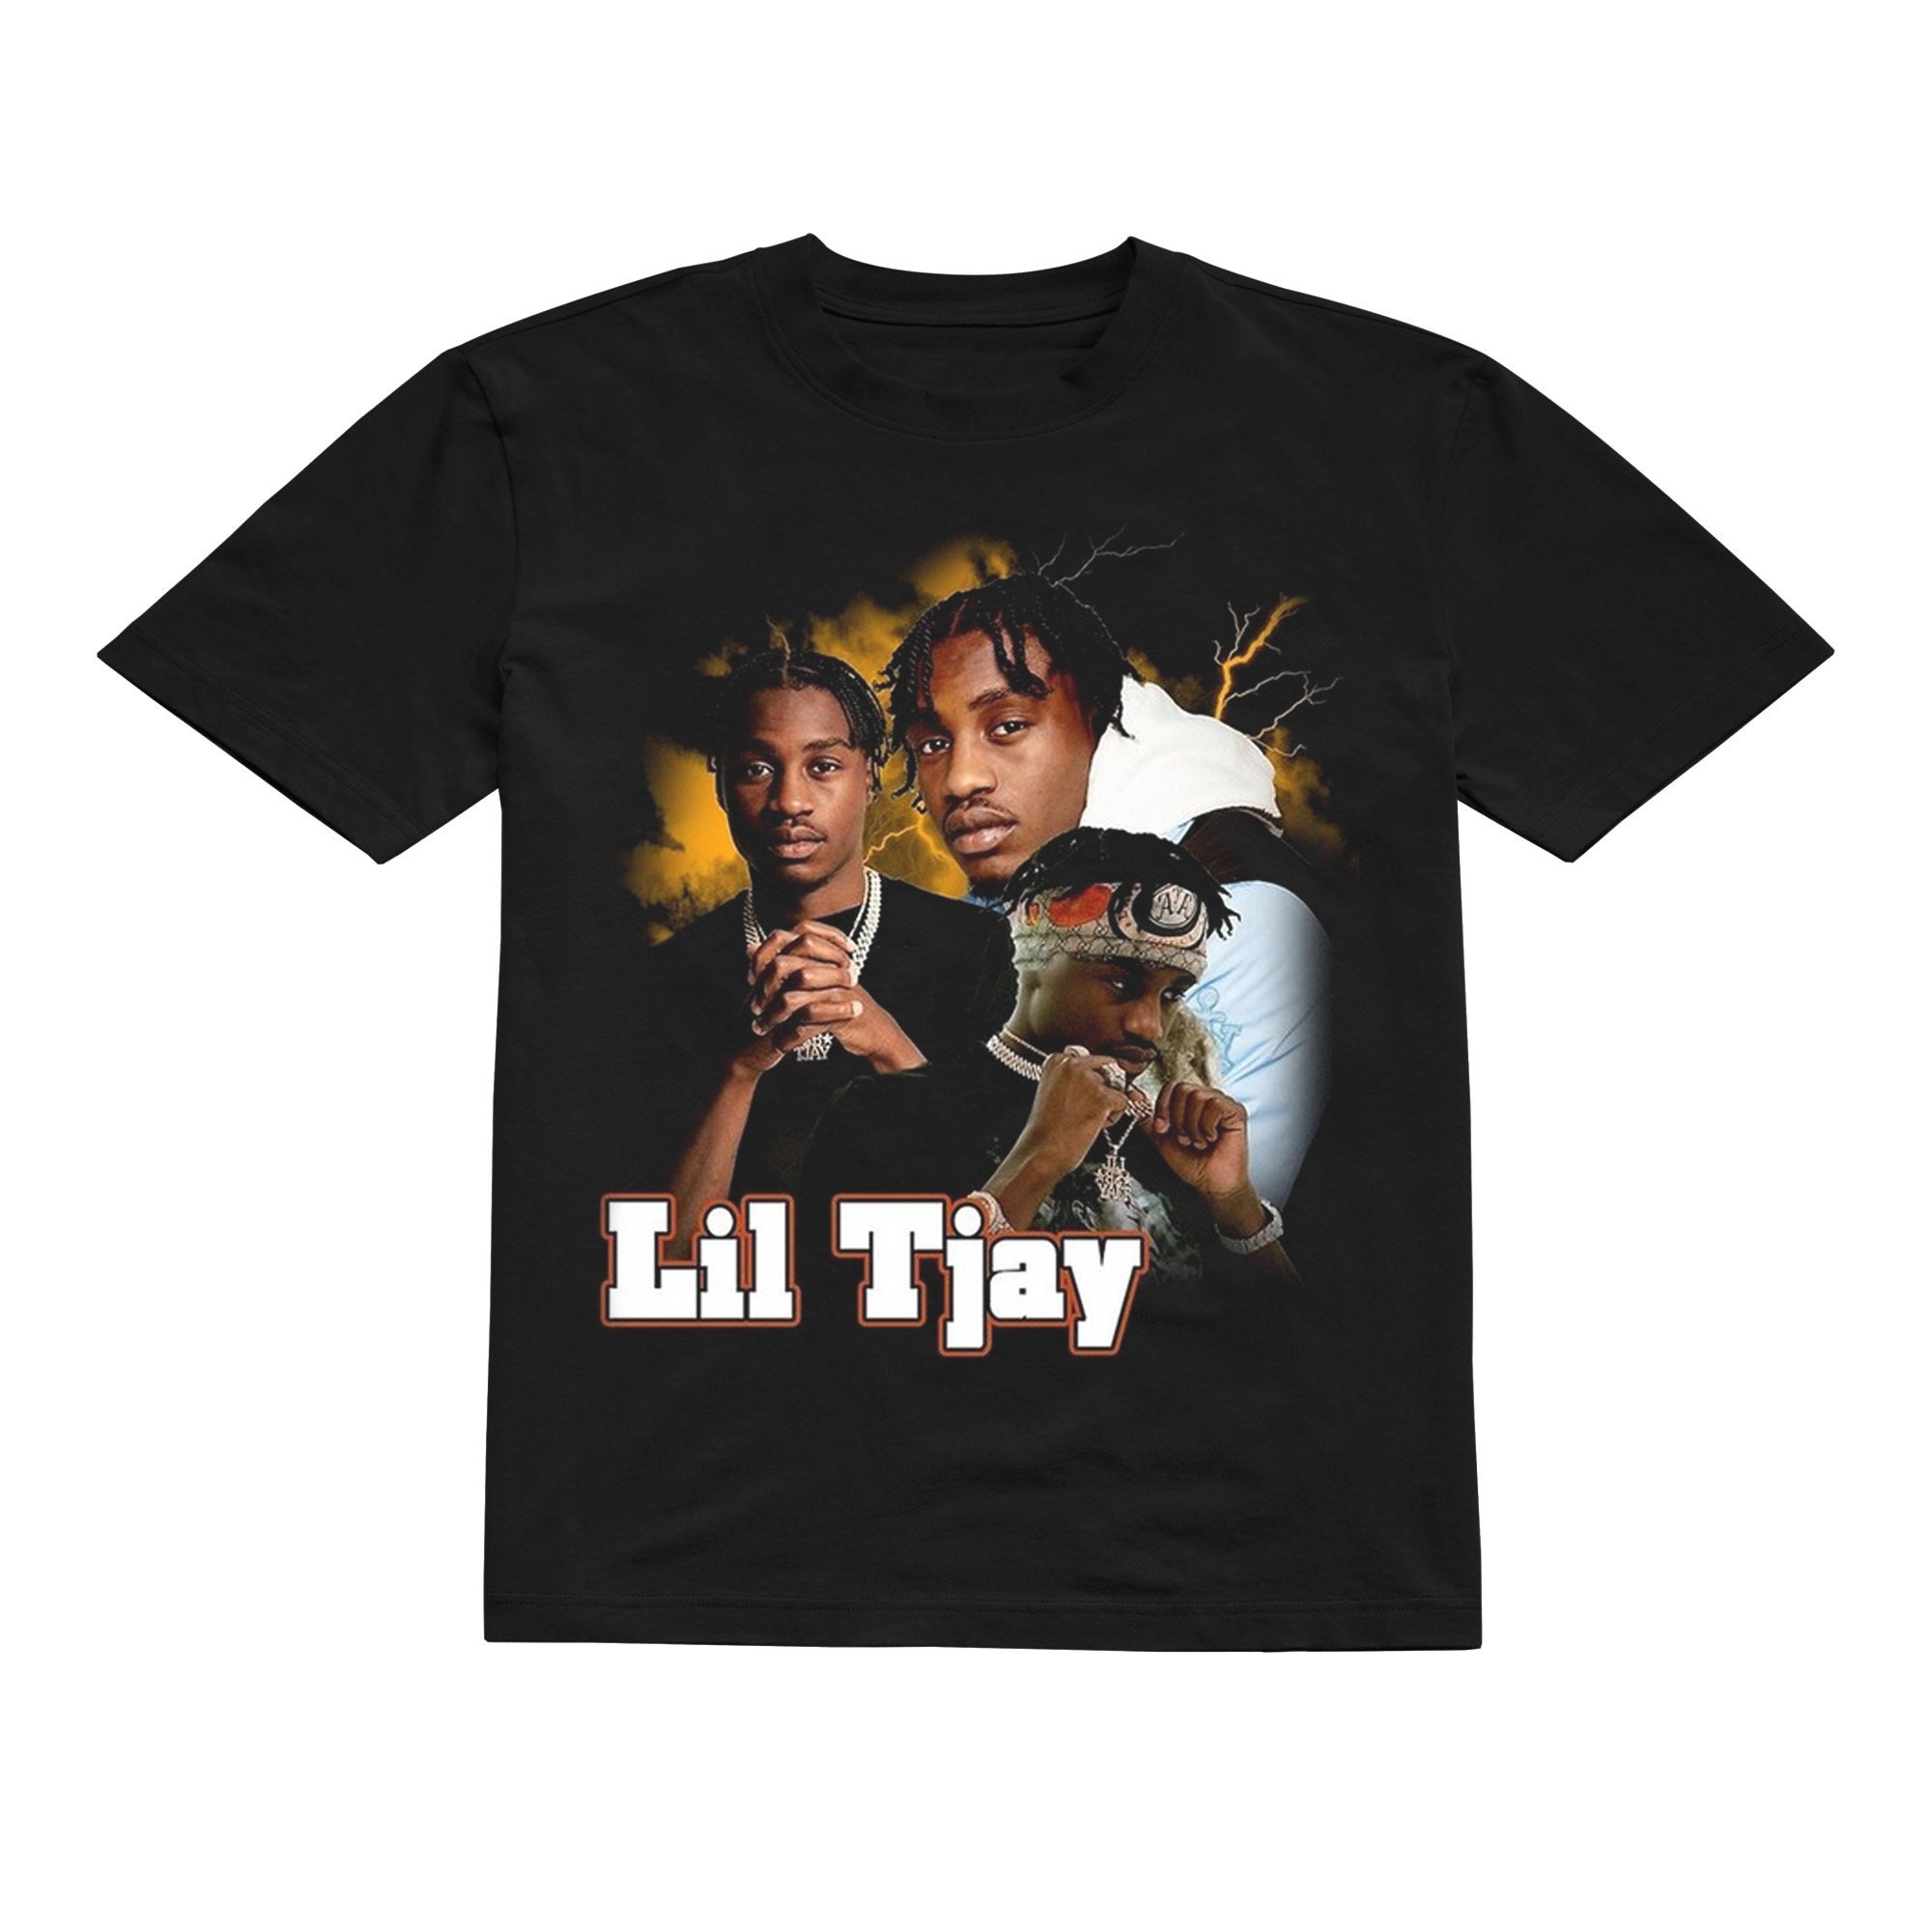 Lil Tjay Shirt - Lil Tjay 90s Vintage x Bootleg Style Rap Tee, Tione Jayden Merritt, Lil Tjay T-Shirt